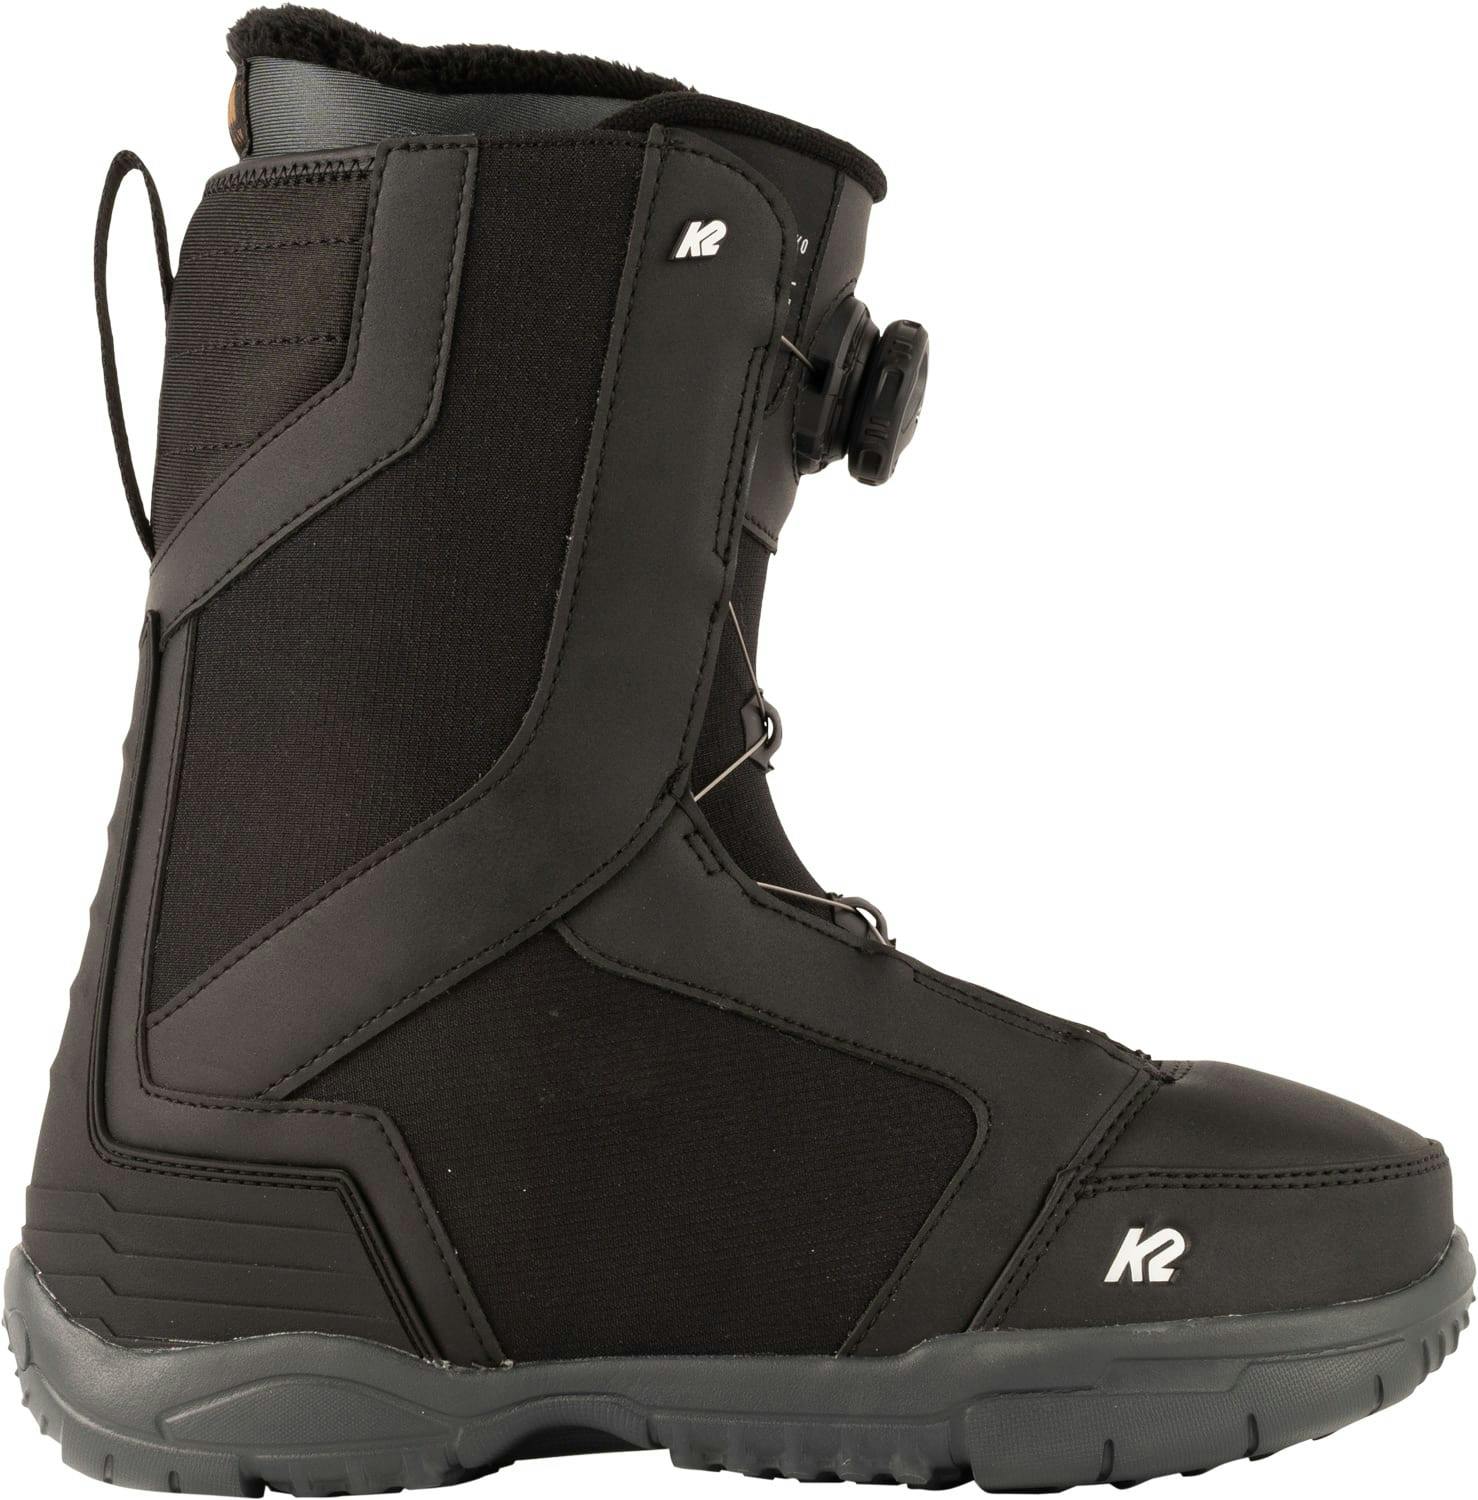 Details about   K2 Corsair Snowboard Boots size M9.5 Blue 